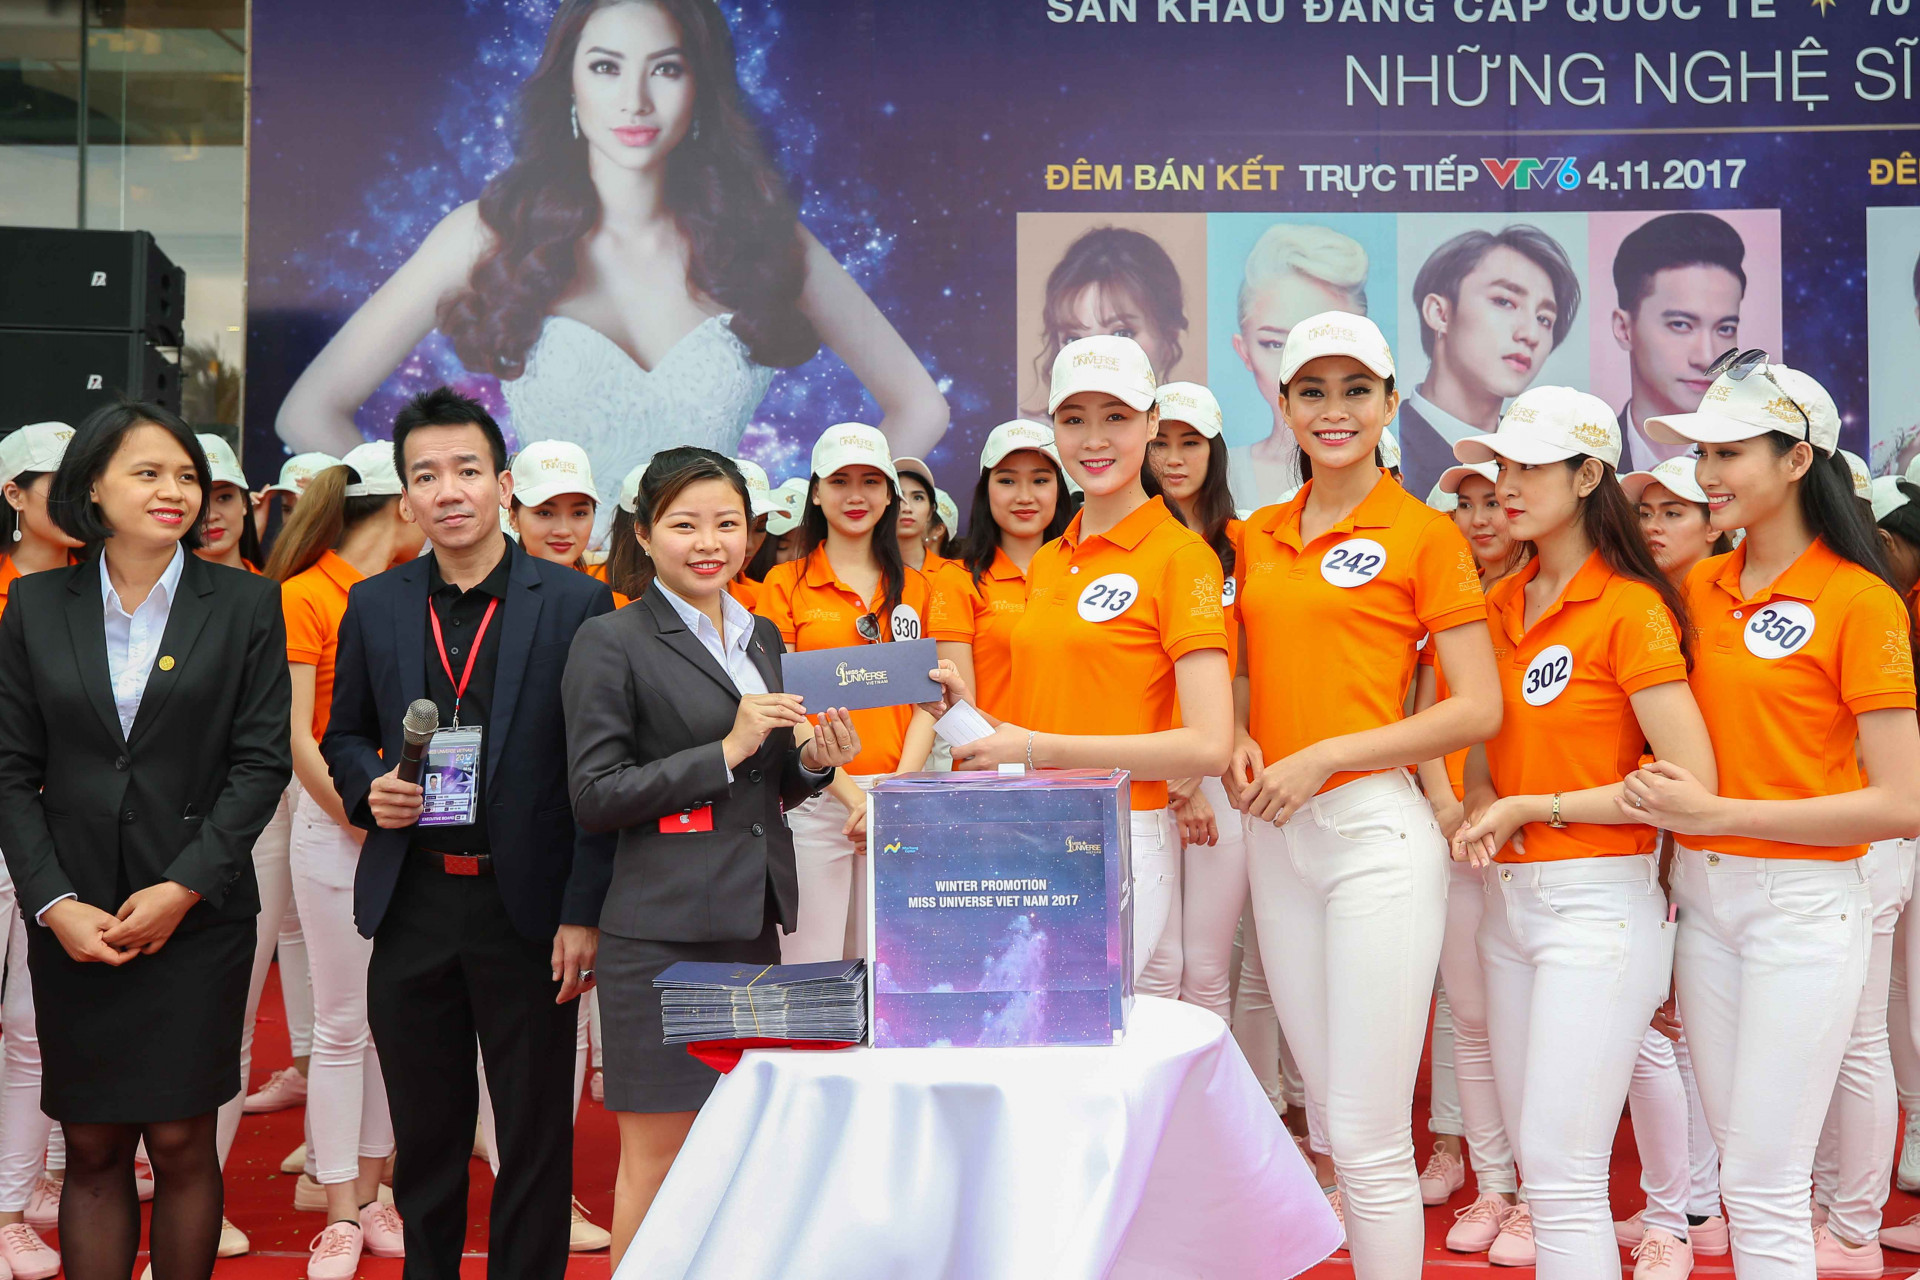 Bốc thăm trúng thưởng cho khách hàng đến Nha Trang Center